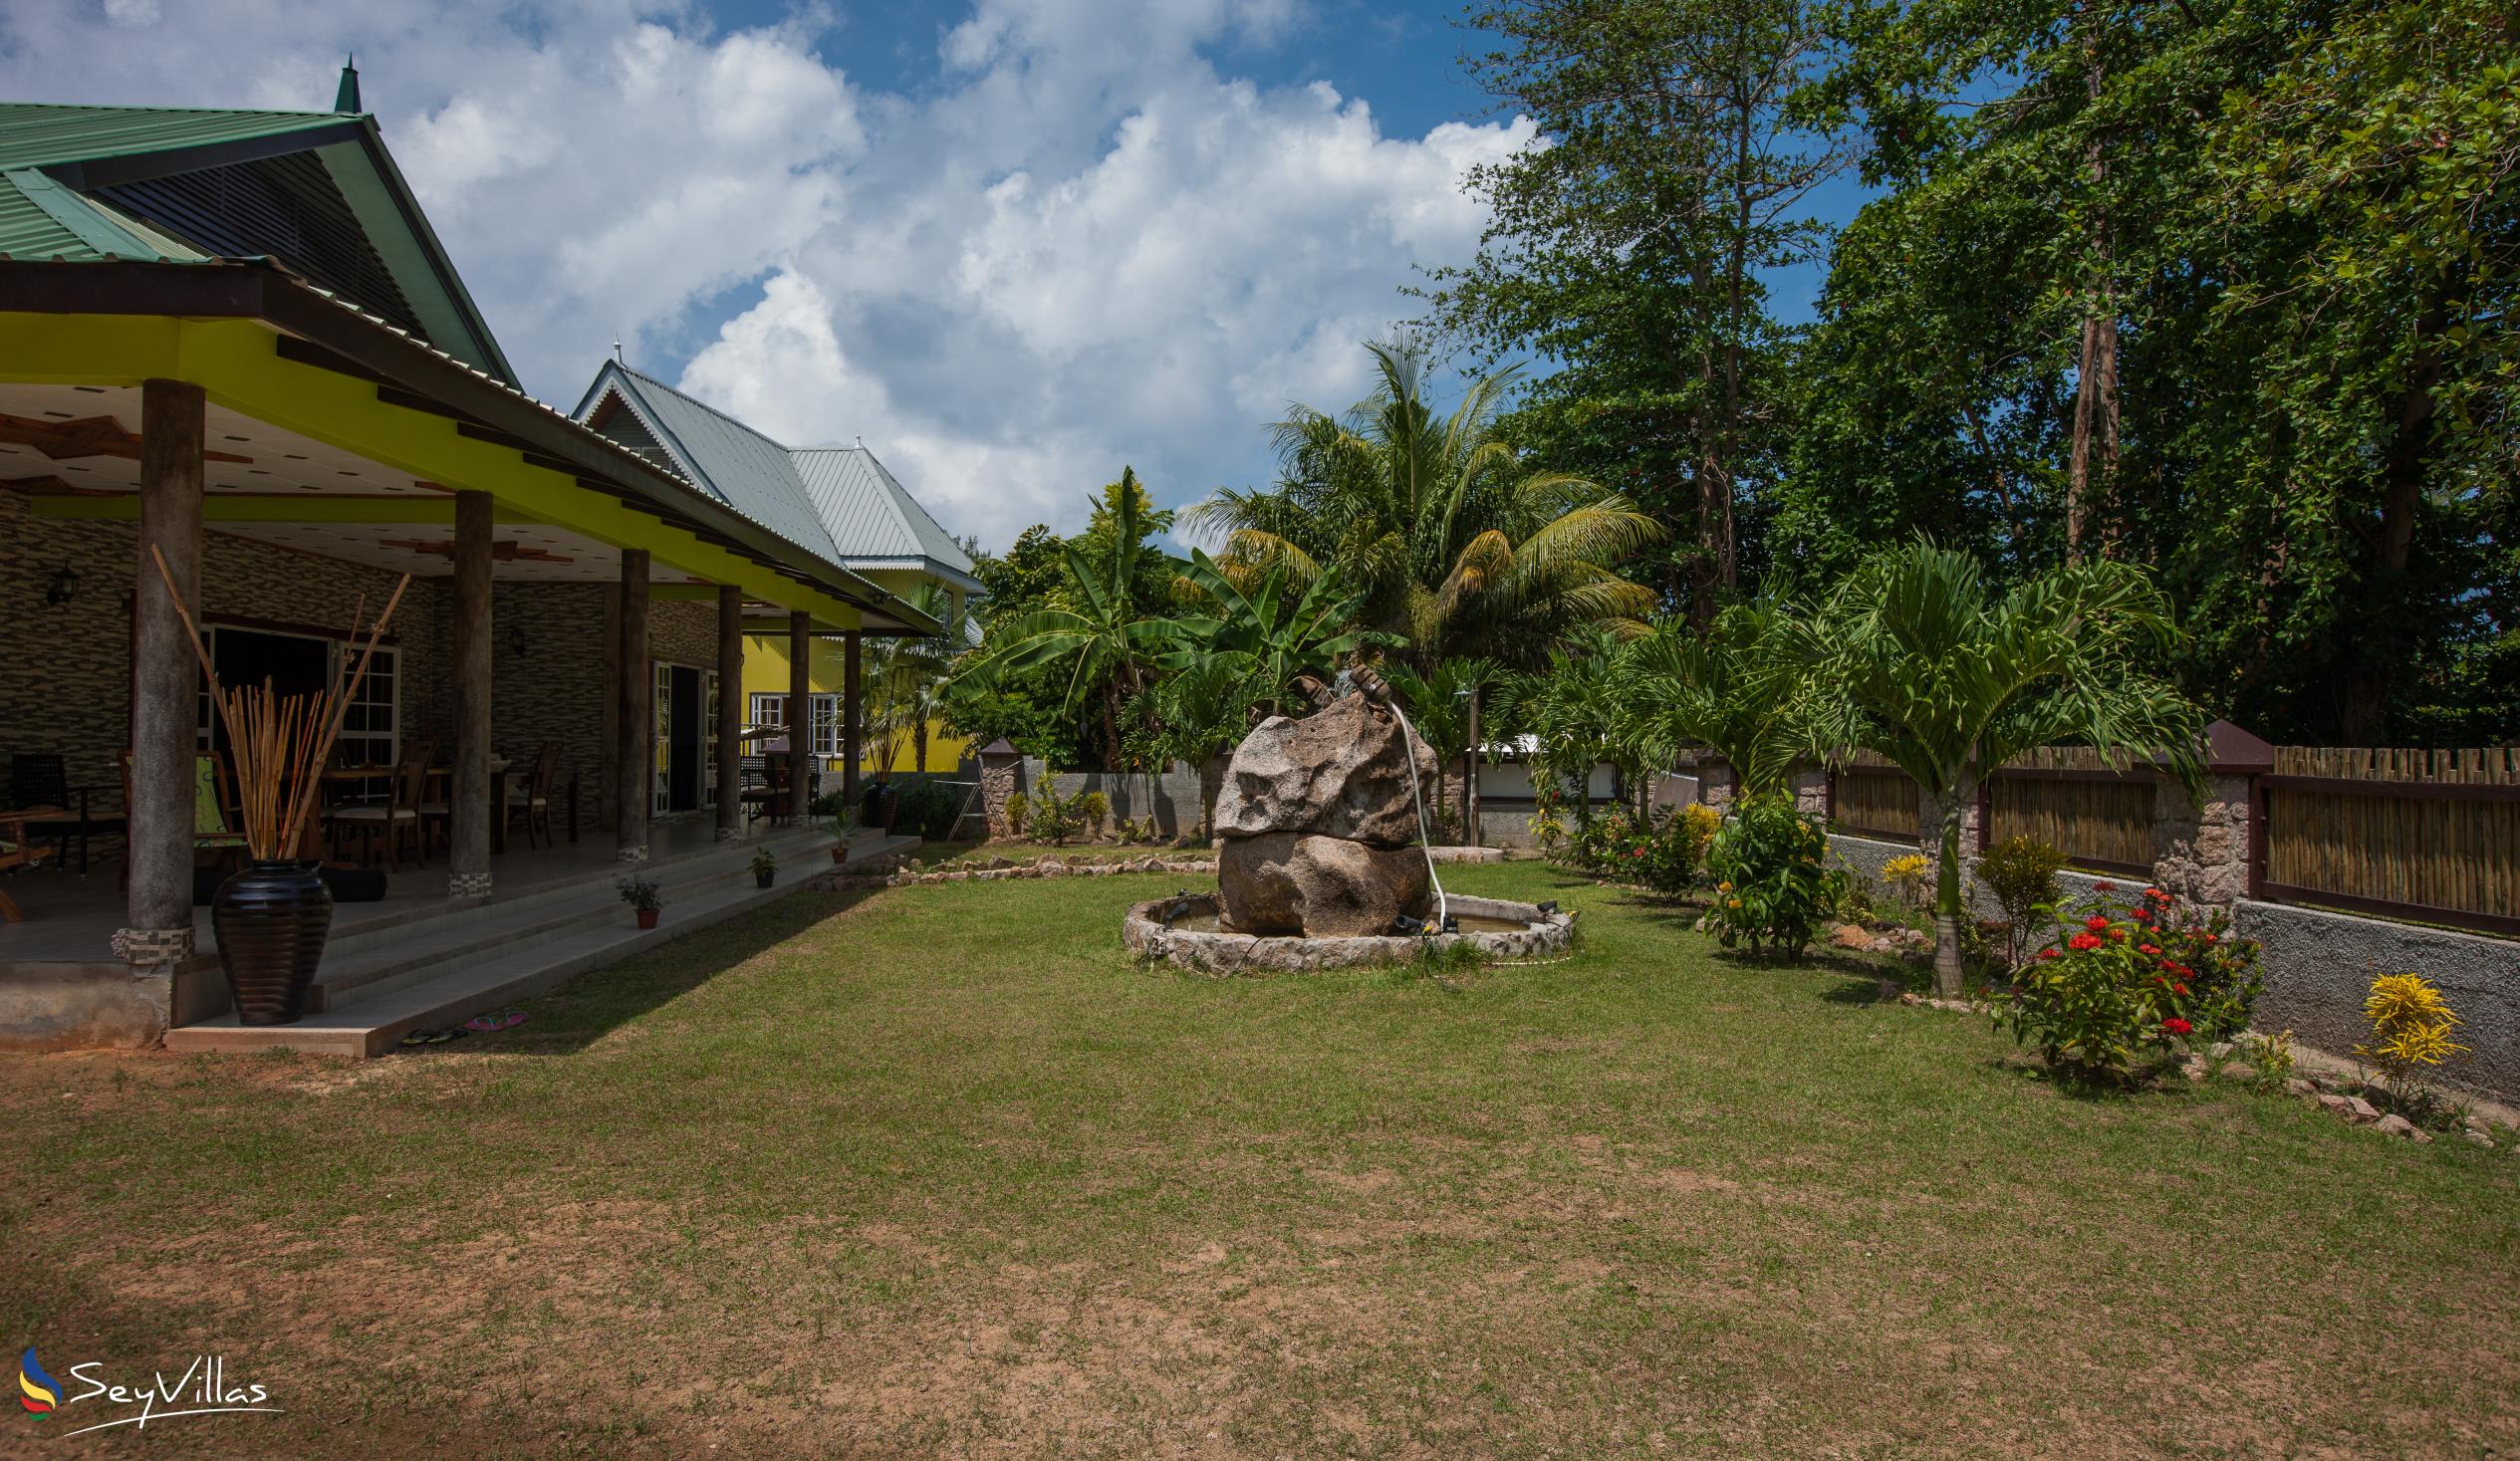 Photo 8: Elje Villa - Outdoor area - La Digue (Seychelles)